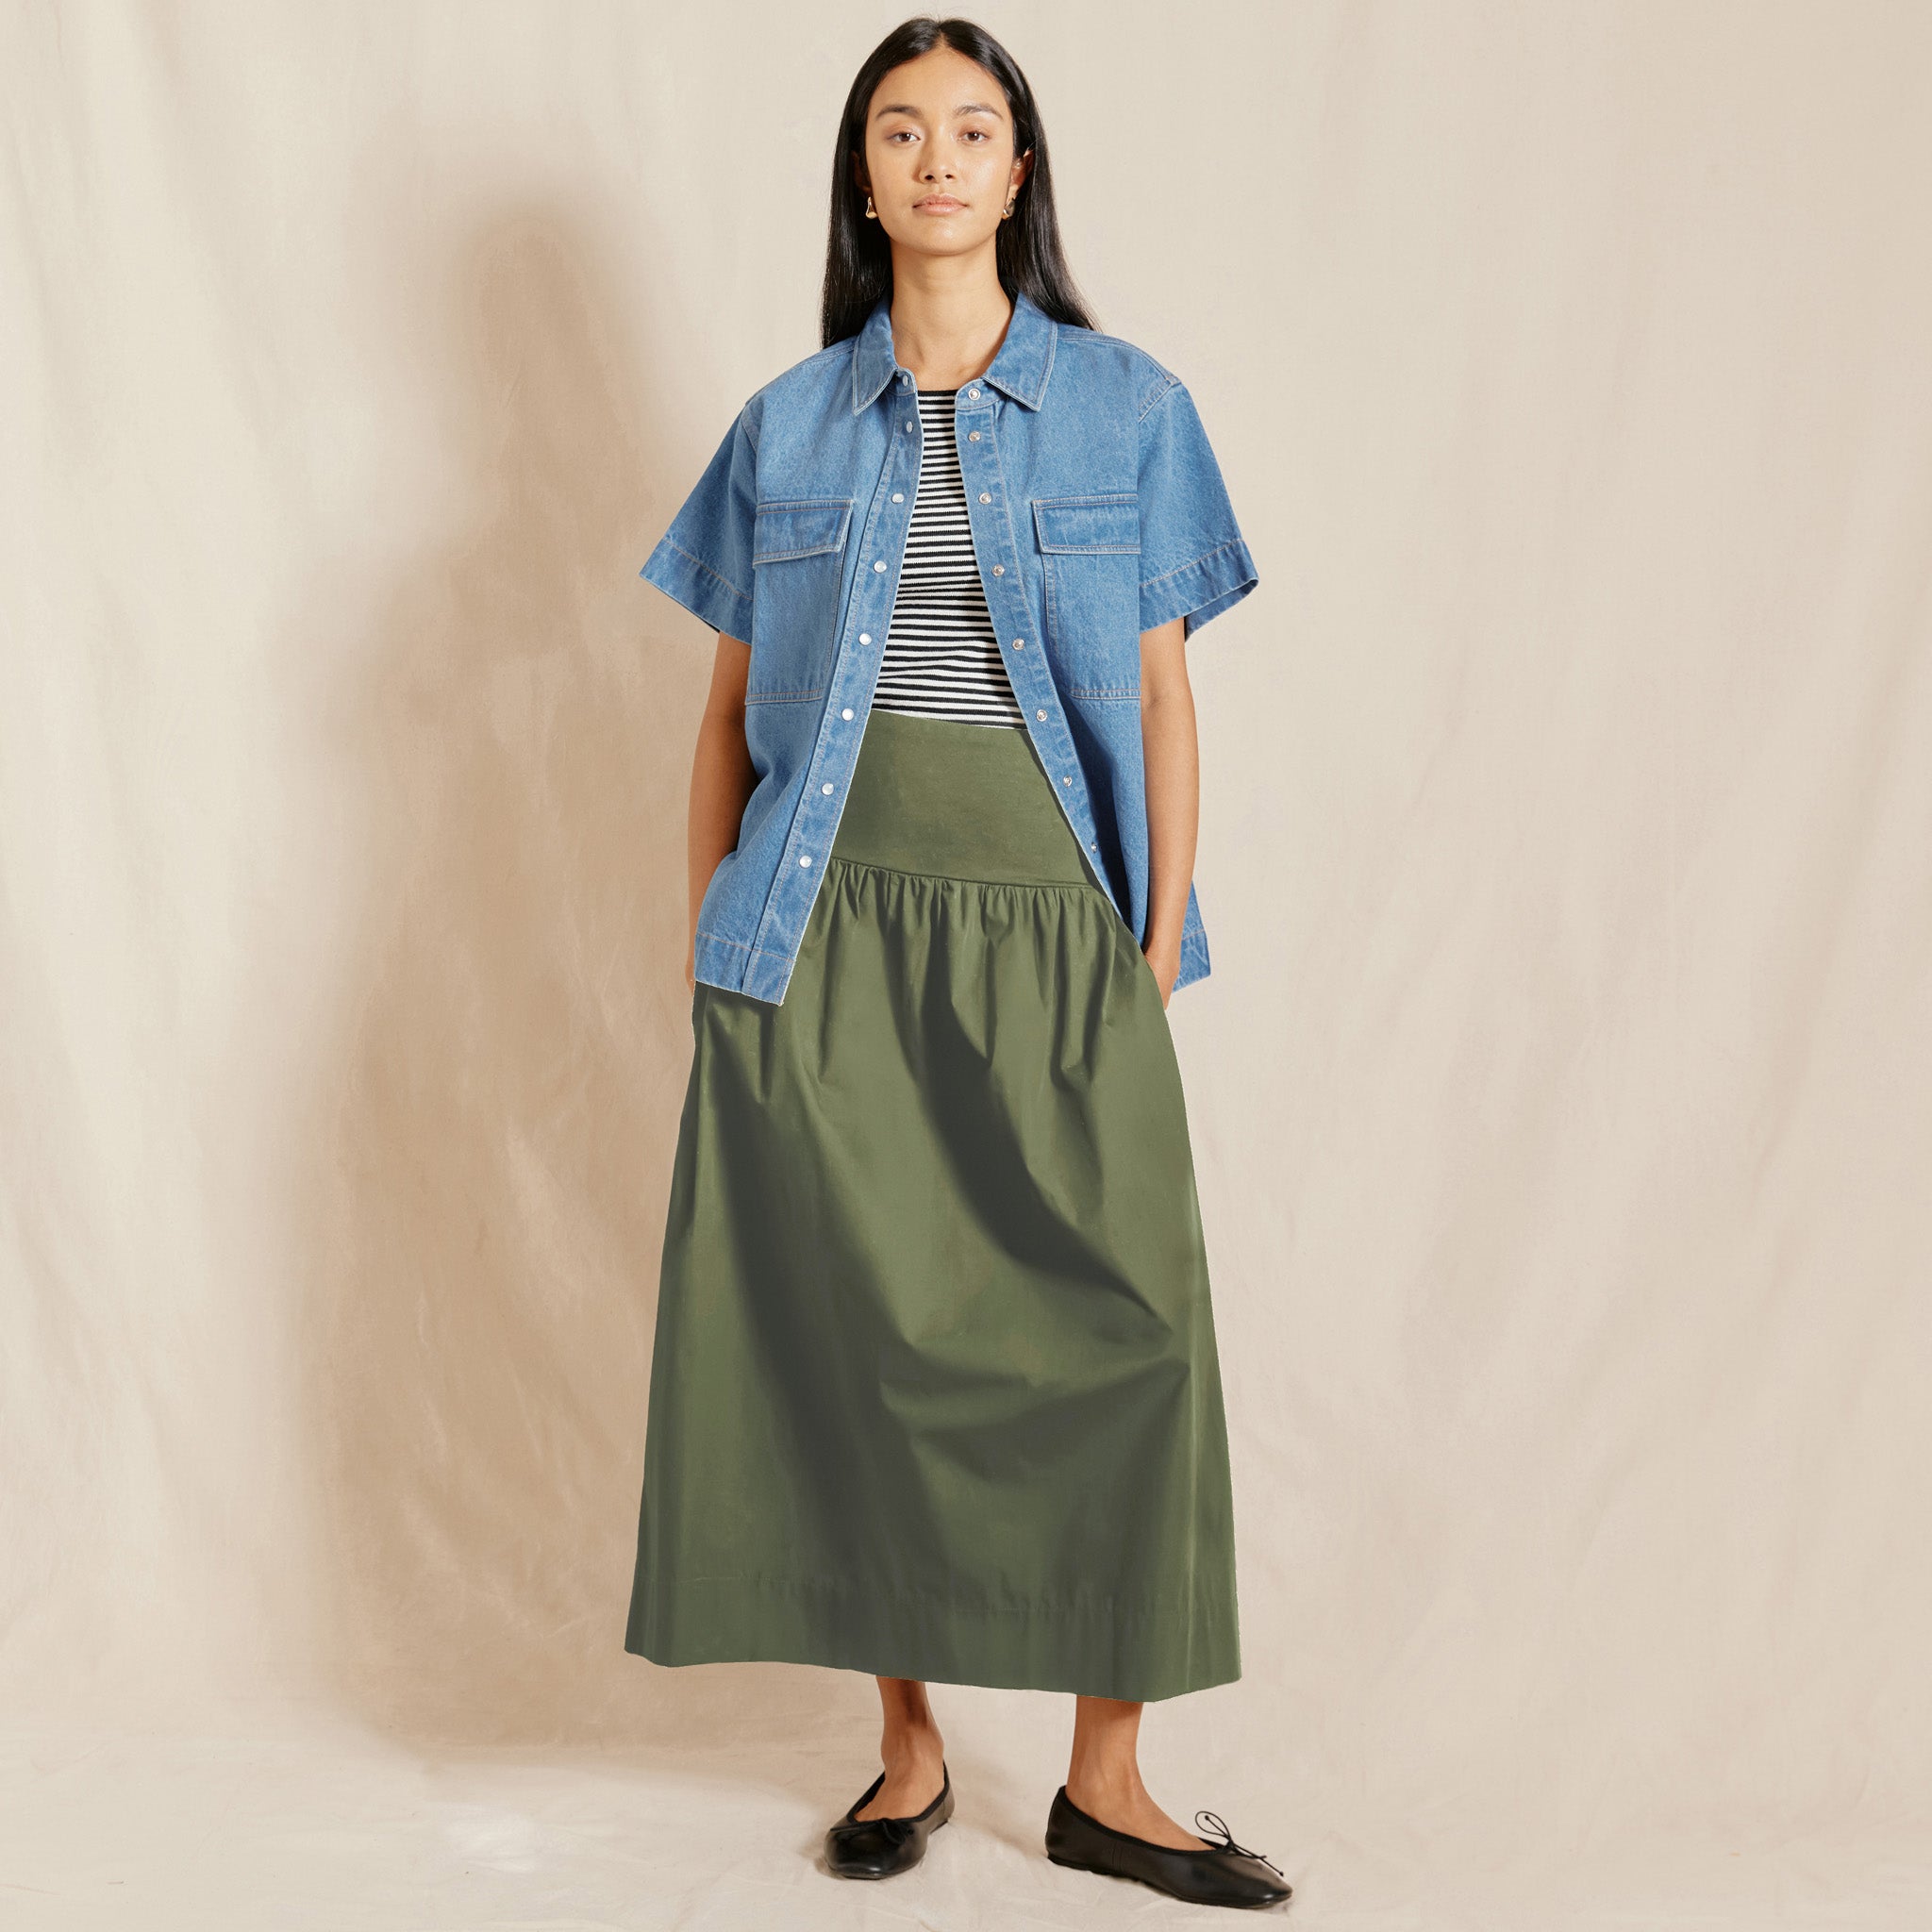 Khaki Woven Mix Full Skirt